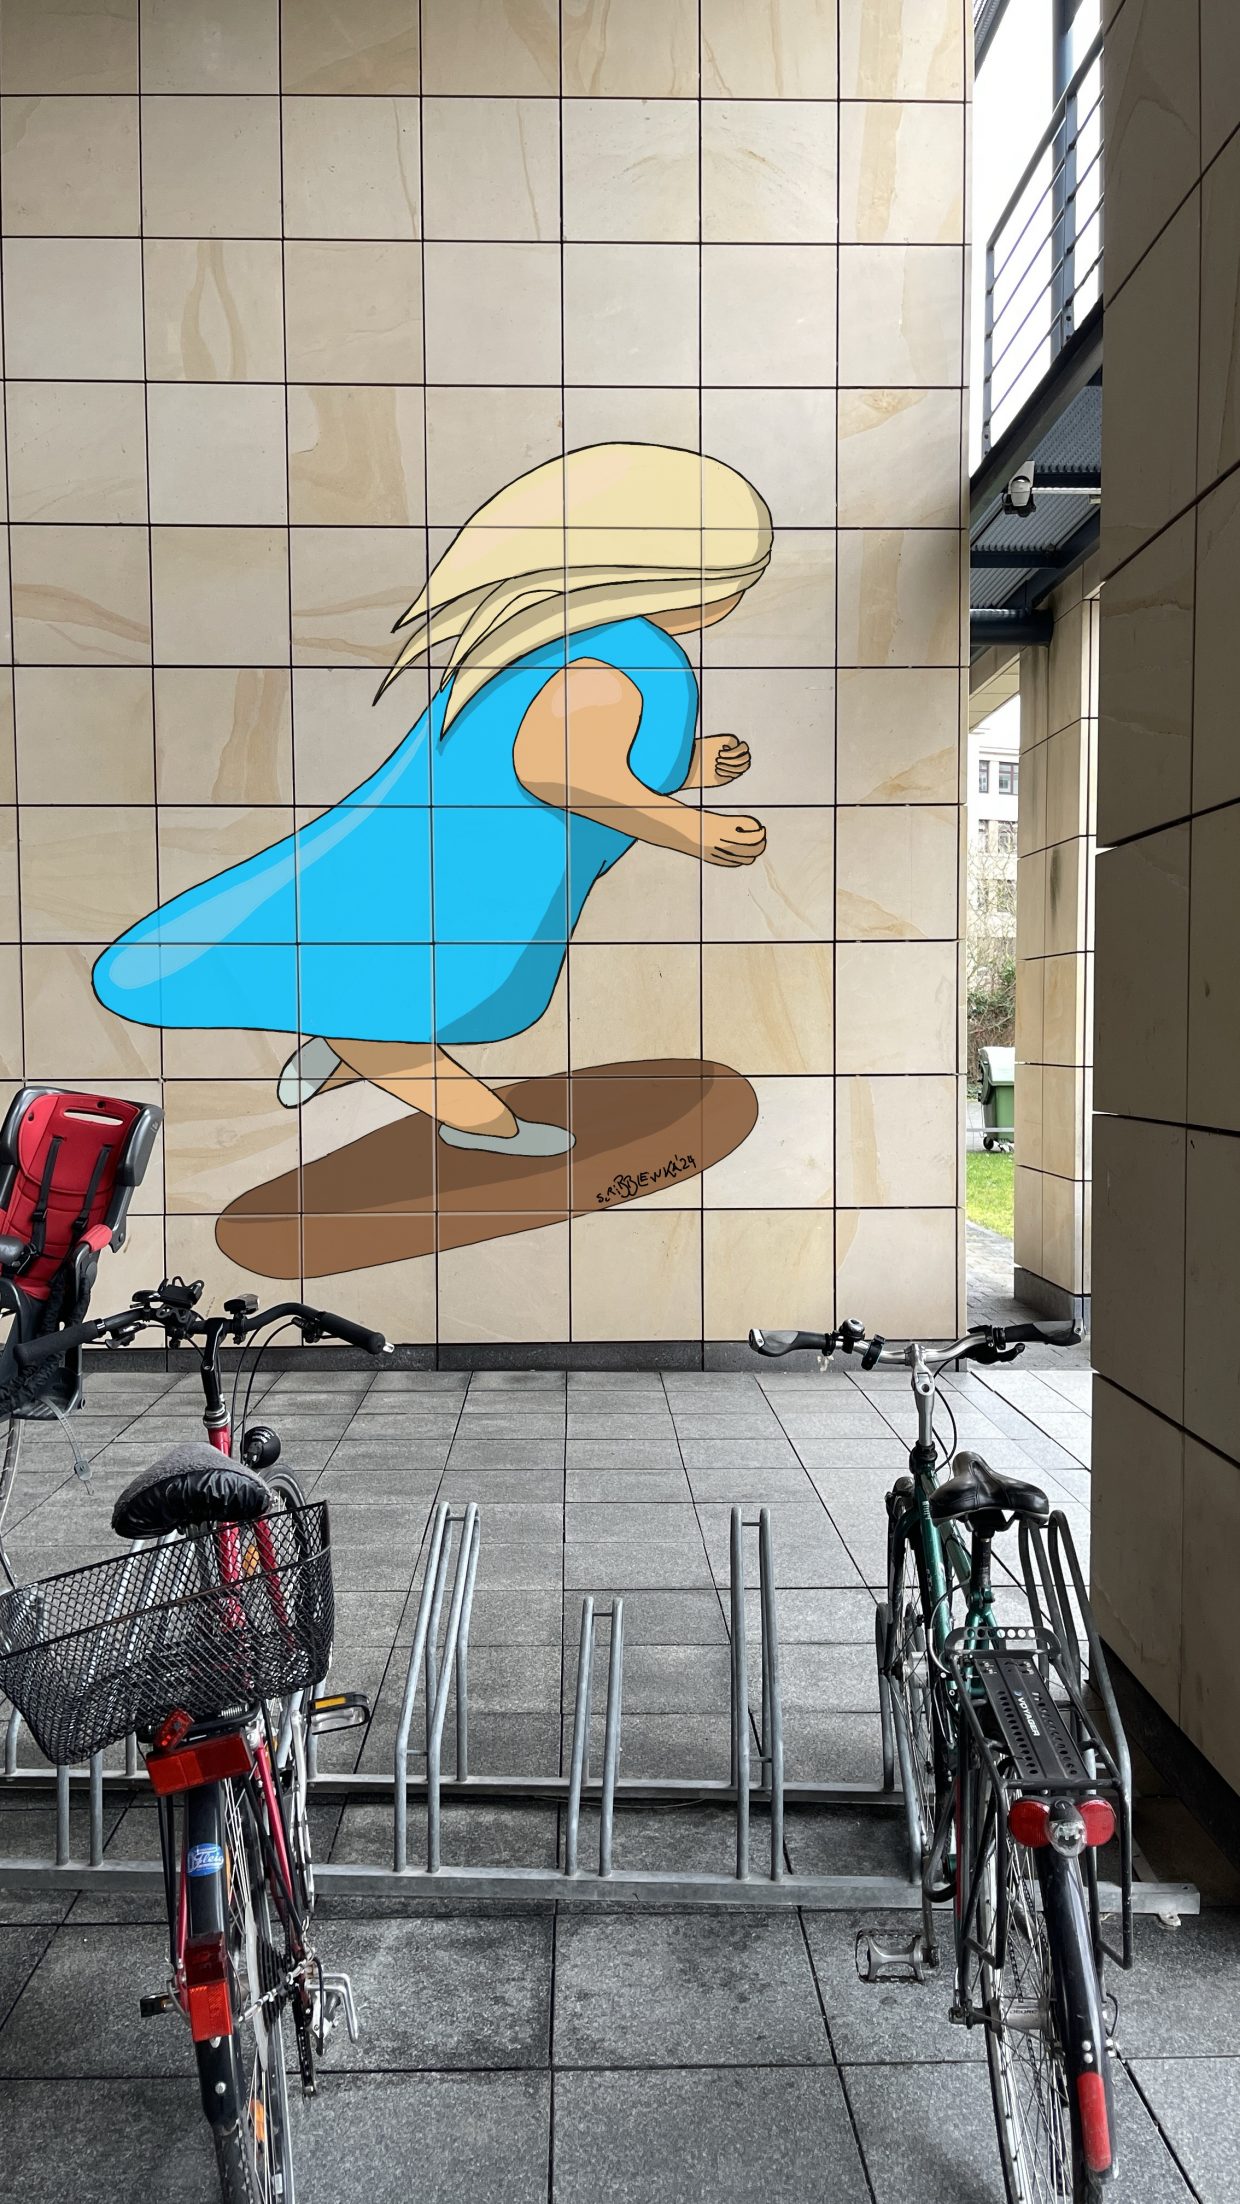 Max-Rubner-Institut in Karlsruhe, Wand mit Fahrradständer. Auf der Wand ein Gemälde mit einer Frau auf einem Skateboard.